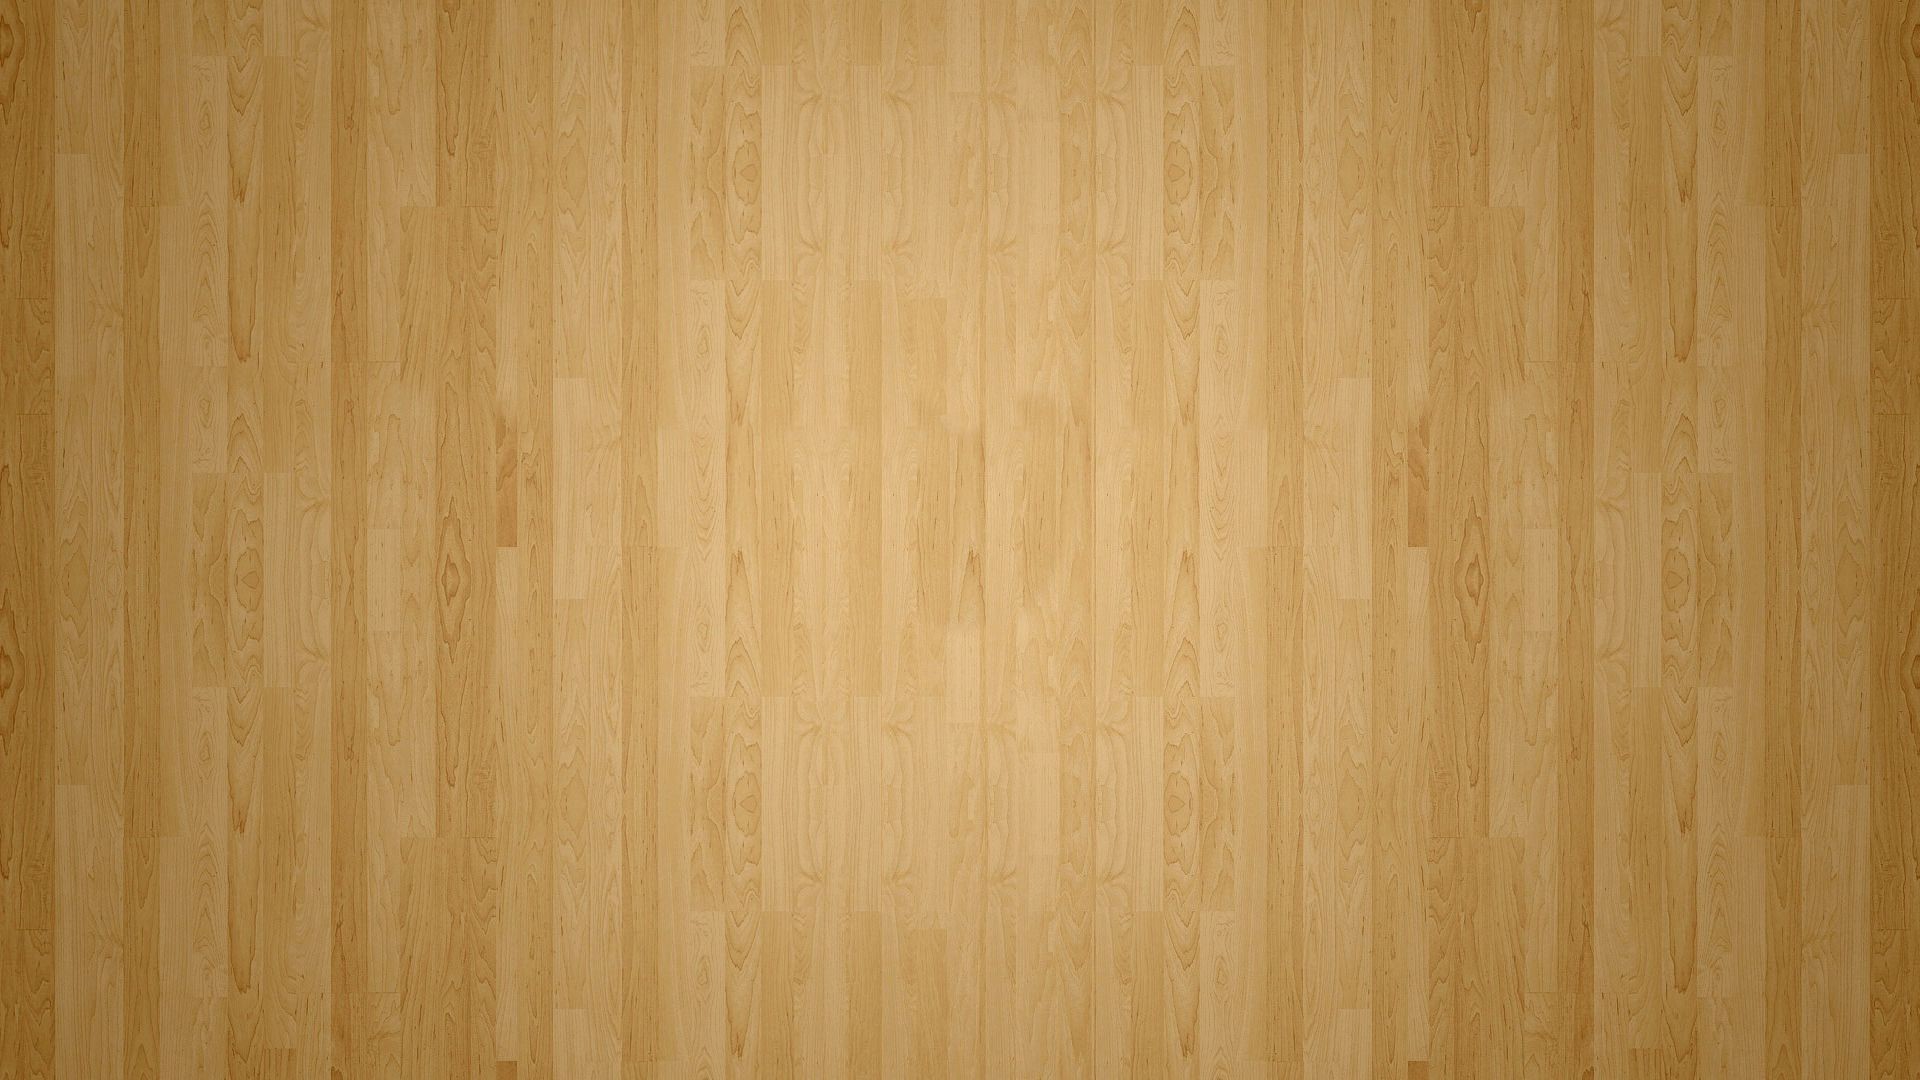 1920x1080 Wood Flooring Background And Wood Floor Wallpaper Iqjwpj Trends Floor Idea